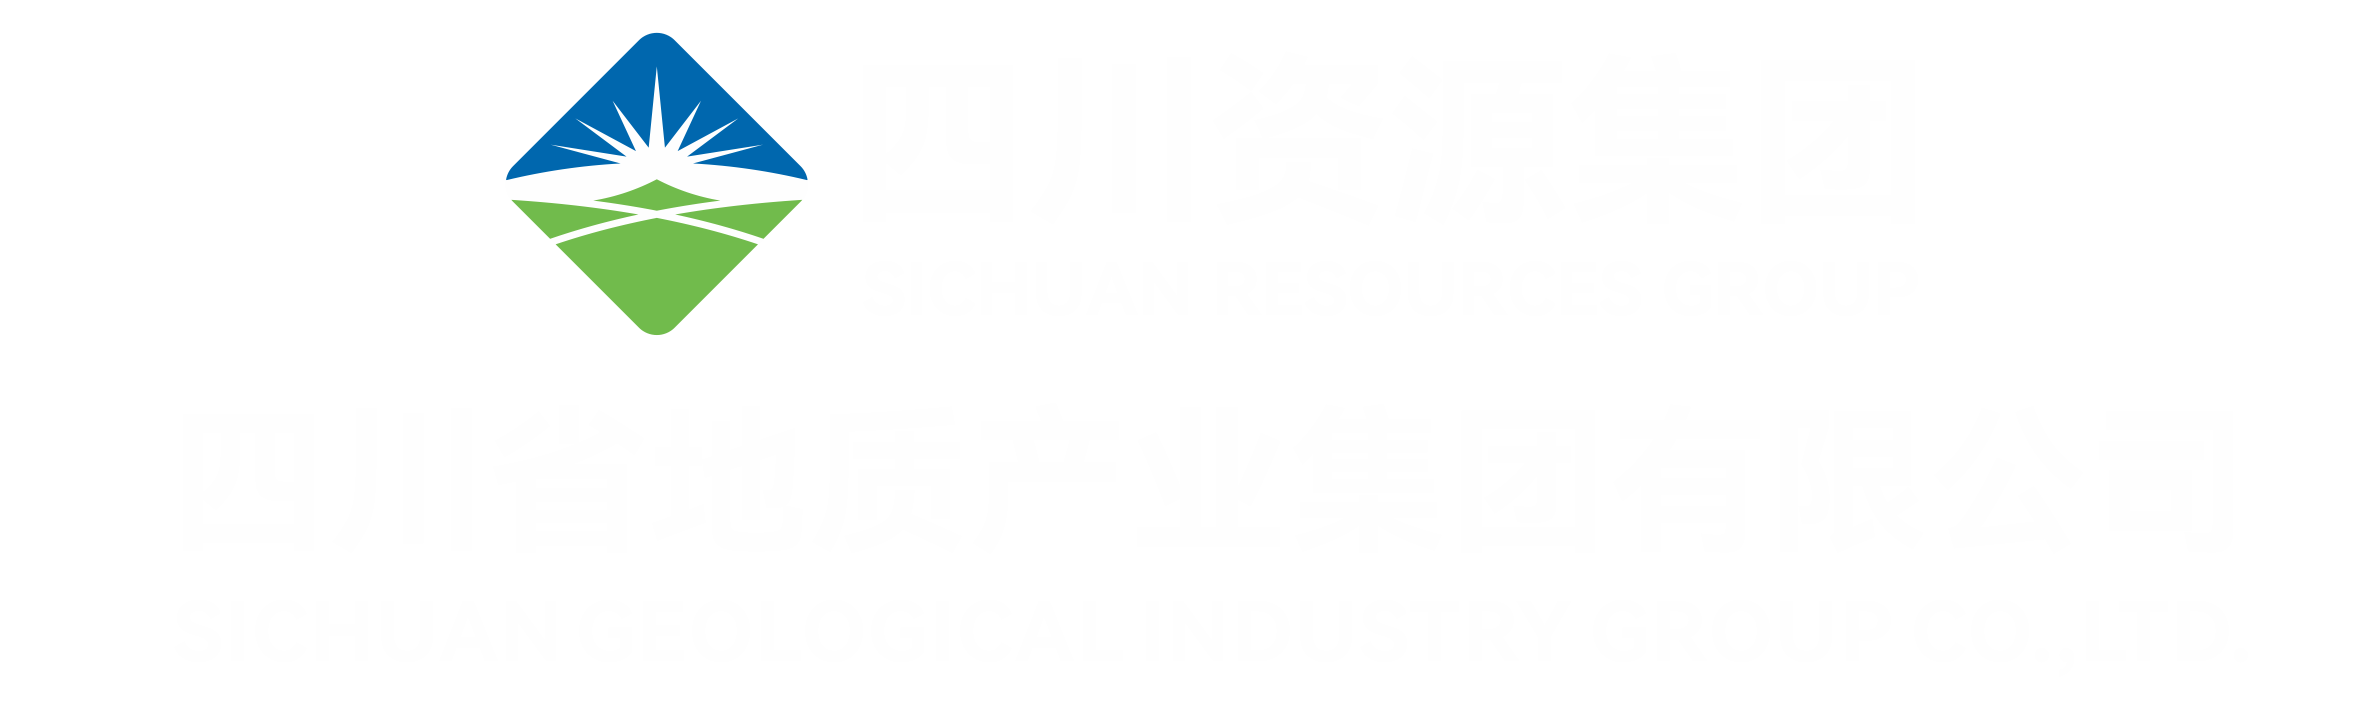 四川省地質產業（集團）有限公司